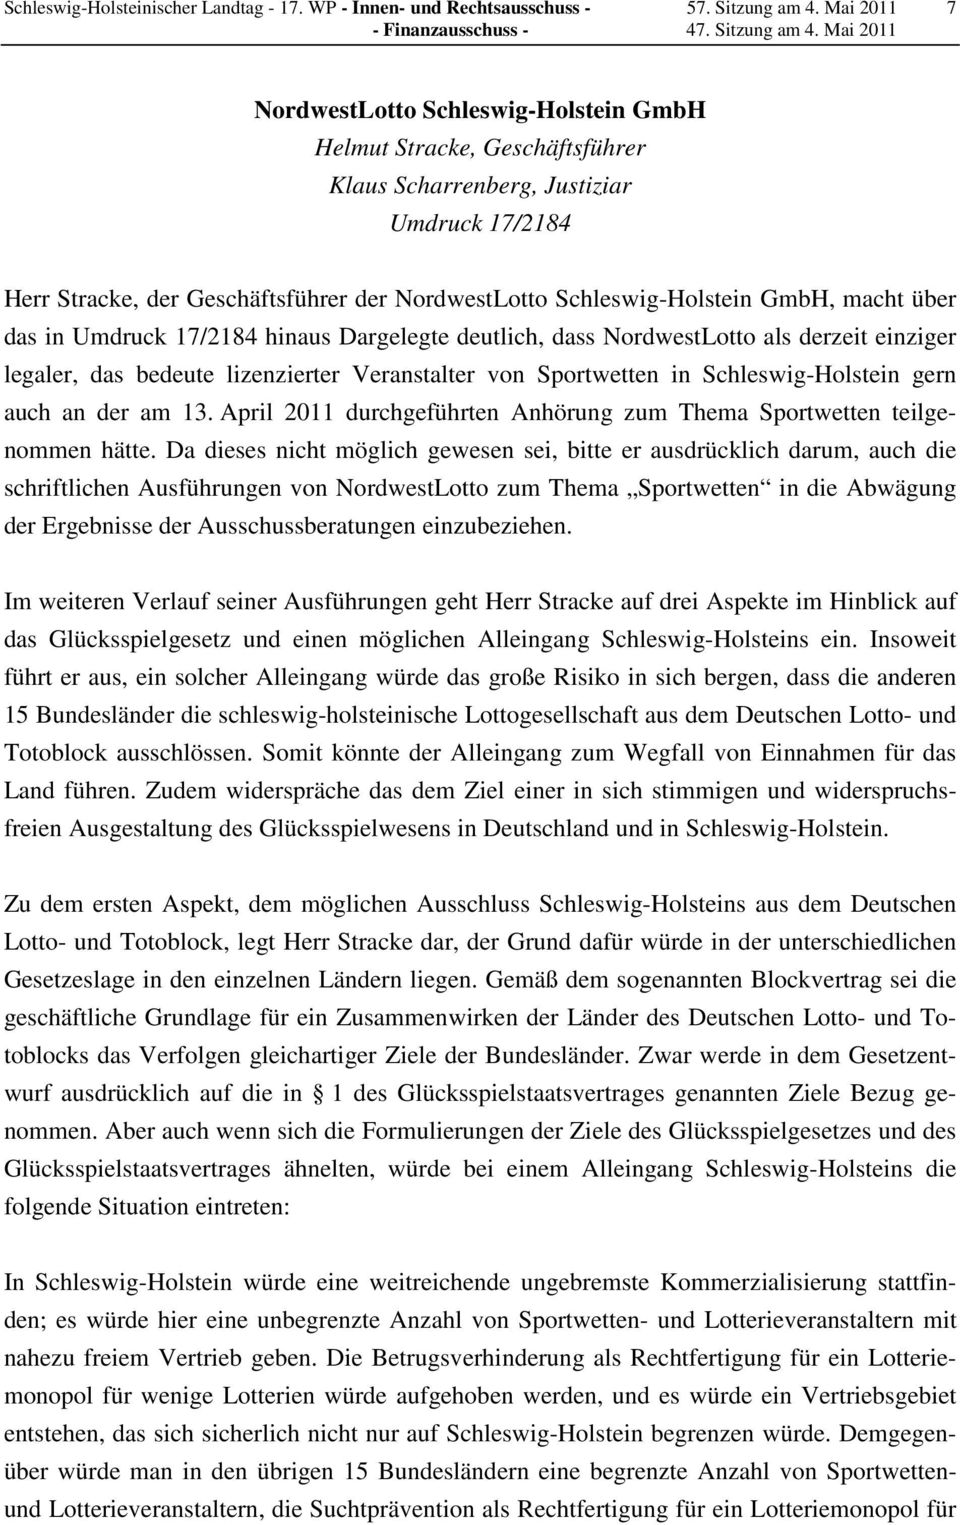 GmbH, macht über das in Umdruck 17/2184 hinaus Dargelegte deutlich, dass NordwestLotto als derzeit einziger legaler, das bedeute lizenzierter Veranstalter von Sportwetten in Schleswig-Holstein gern